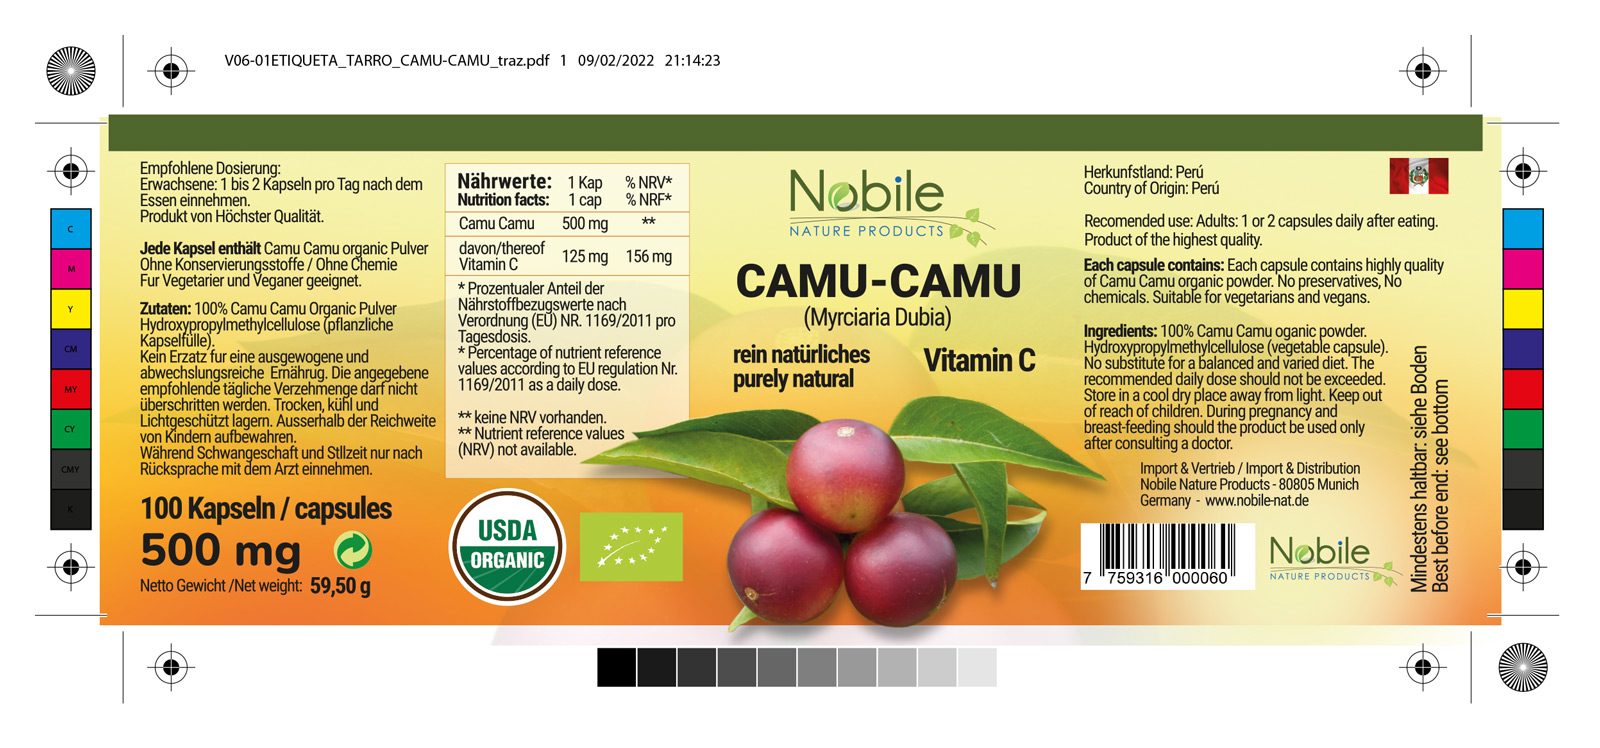 Diseño gráfico y creativo de etiquetas y packaging de productos CAMU - CAMU para Nobile